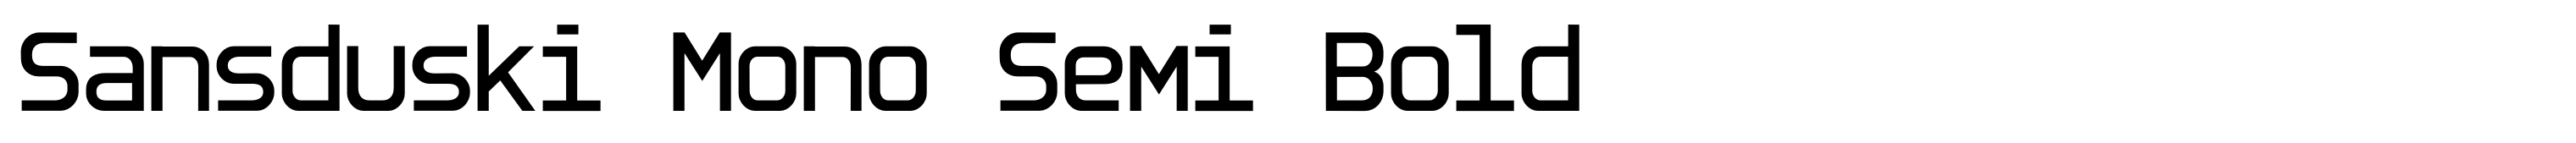 Sansduski Mono Semi Bold